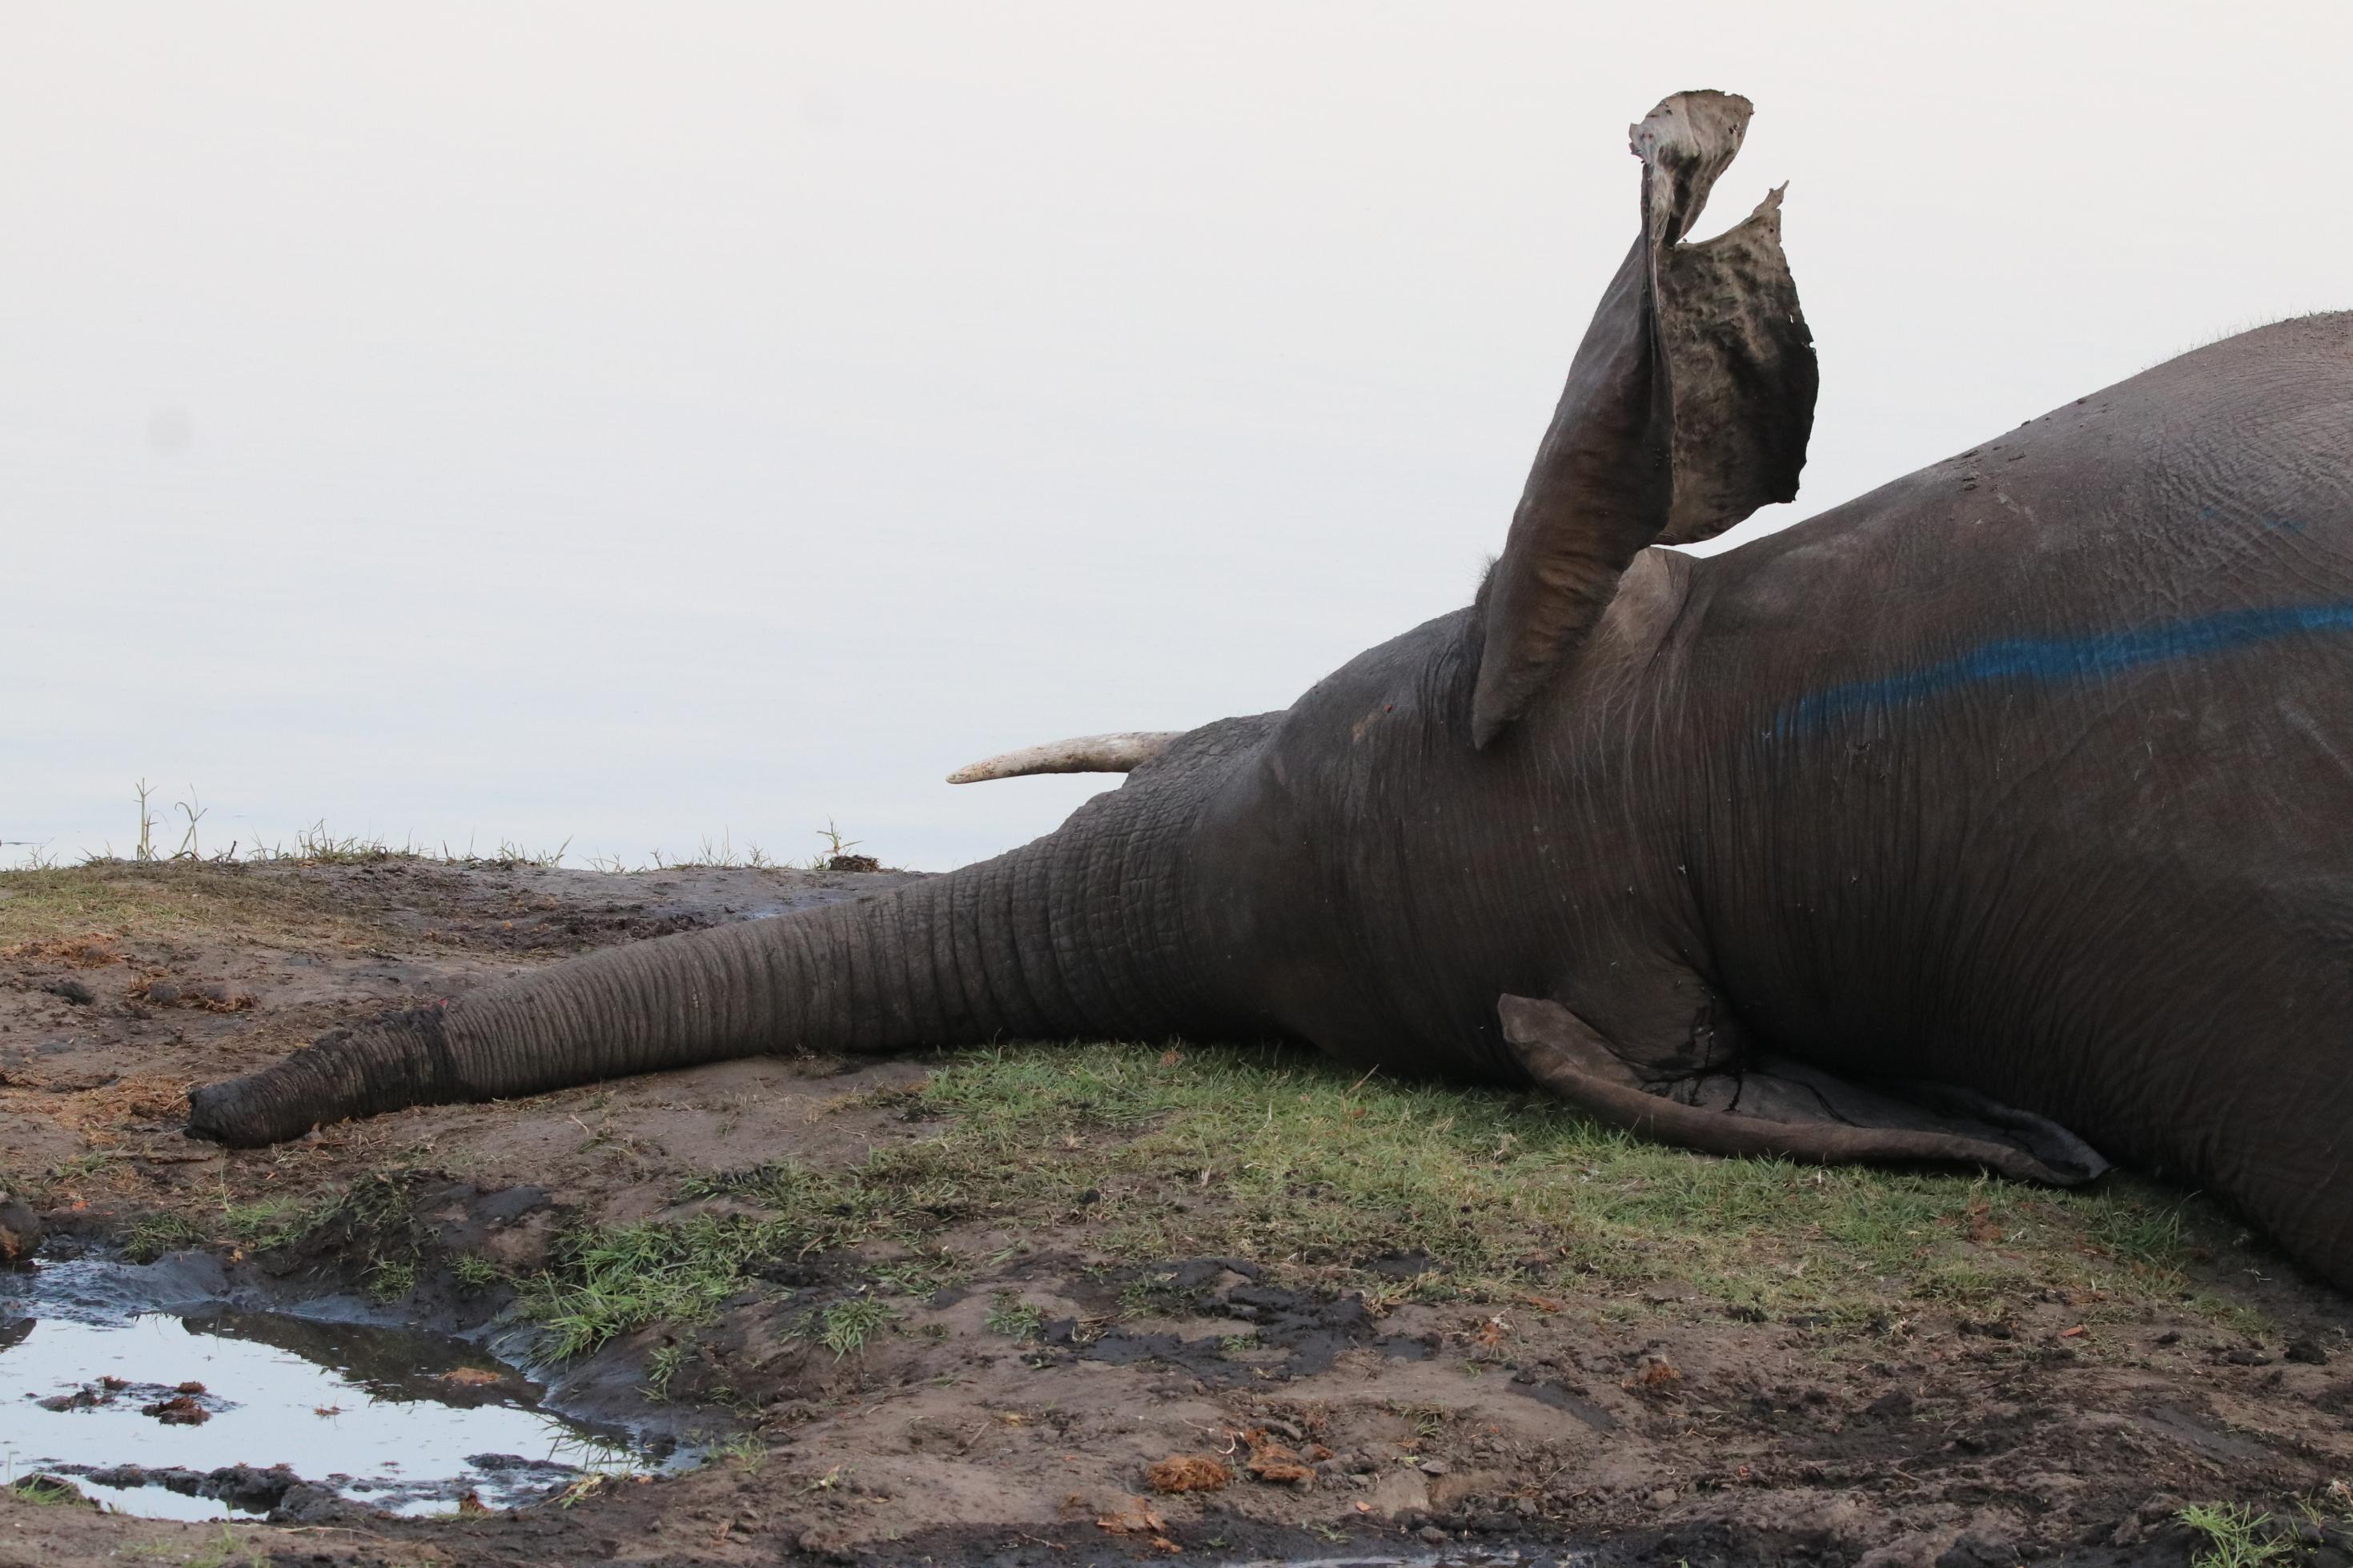 Ein verendeter Elefant in Botswana, das Tier liegt auf der Seite, ein Ohr steht etwas hoch, der Rüssel liegt schlapp auf dem Boden vor einer Pfütze, die Stoßzähne scheinen intakt